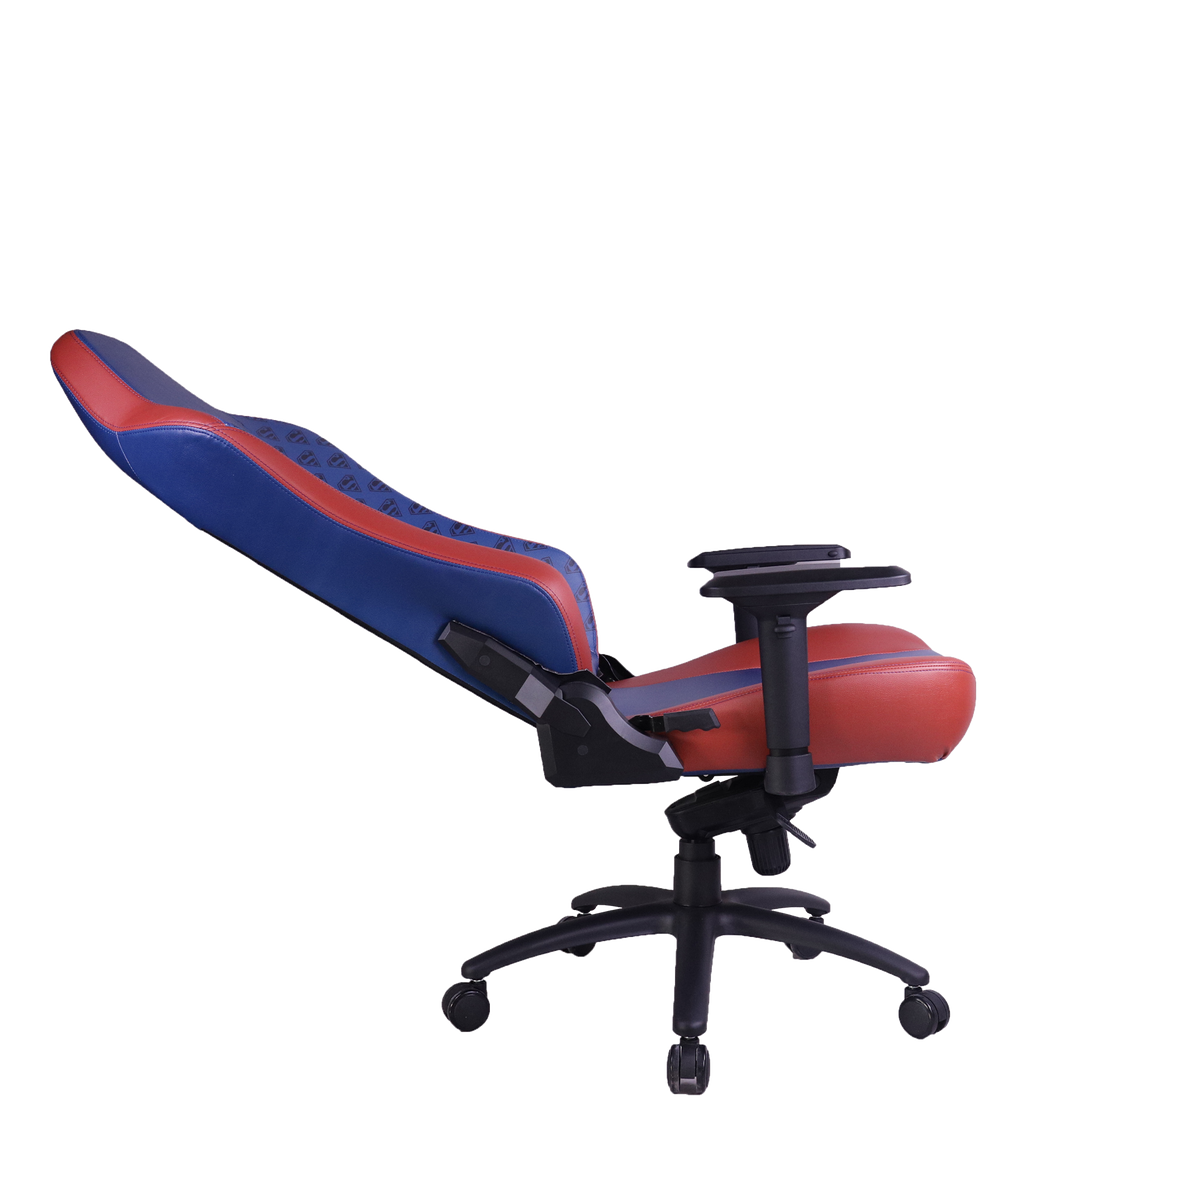 HICON Game chair Vittoria - Ergonomique - Chaise de Gaming